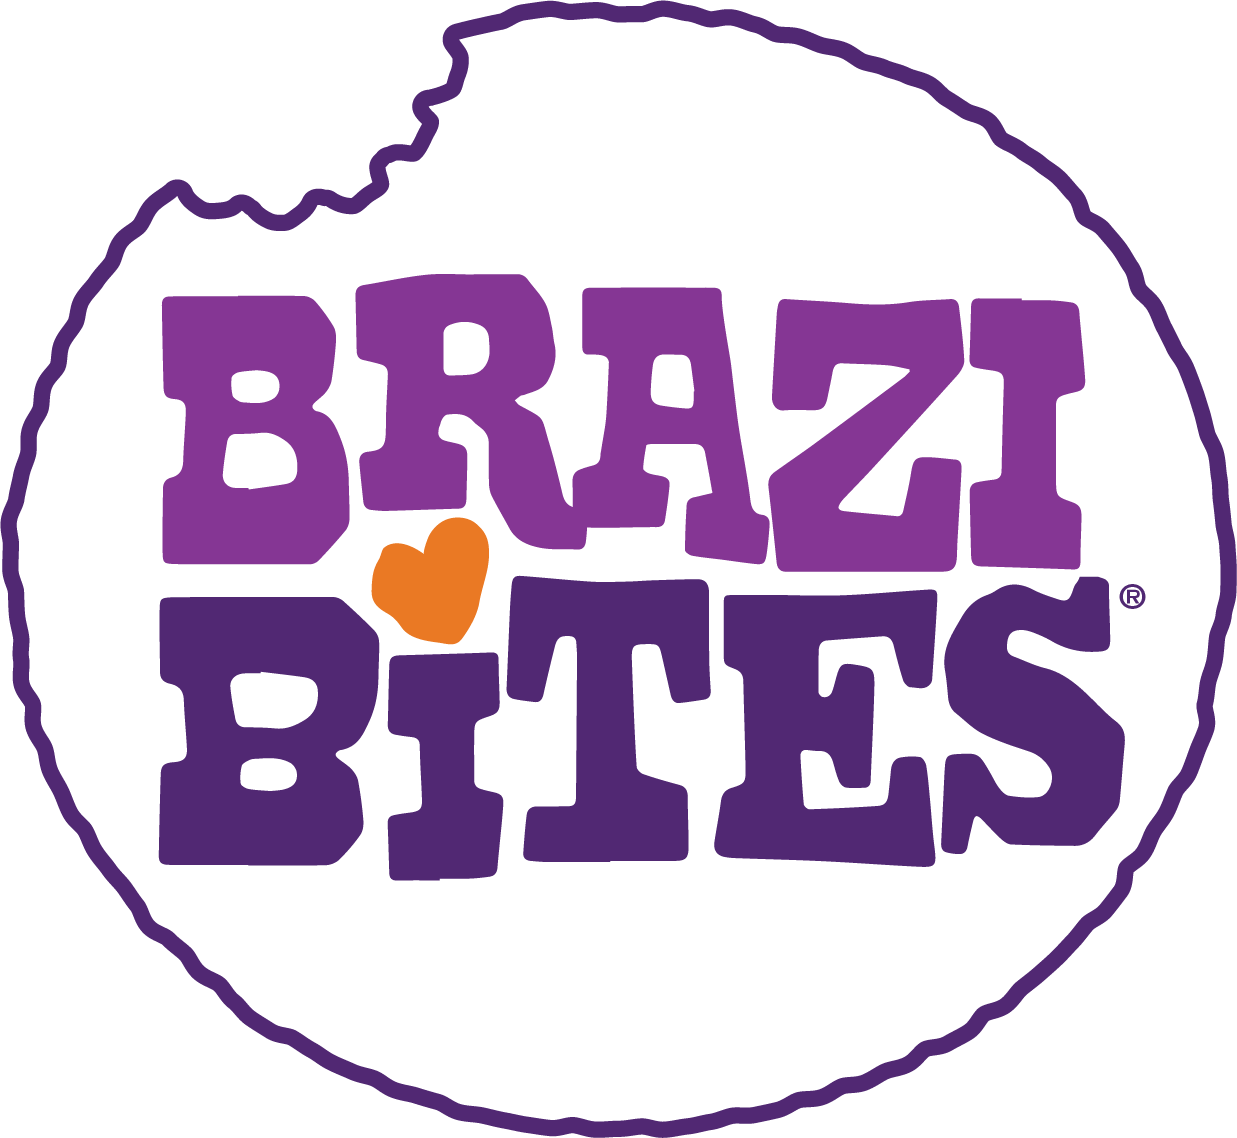 brazi-bites-logo-border.png